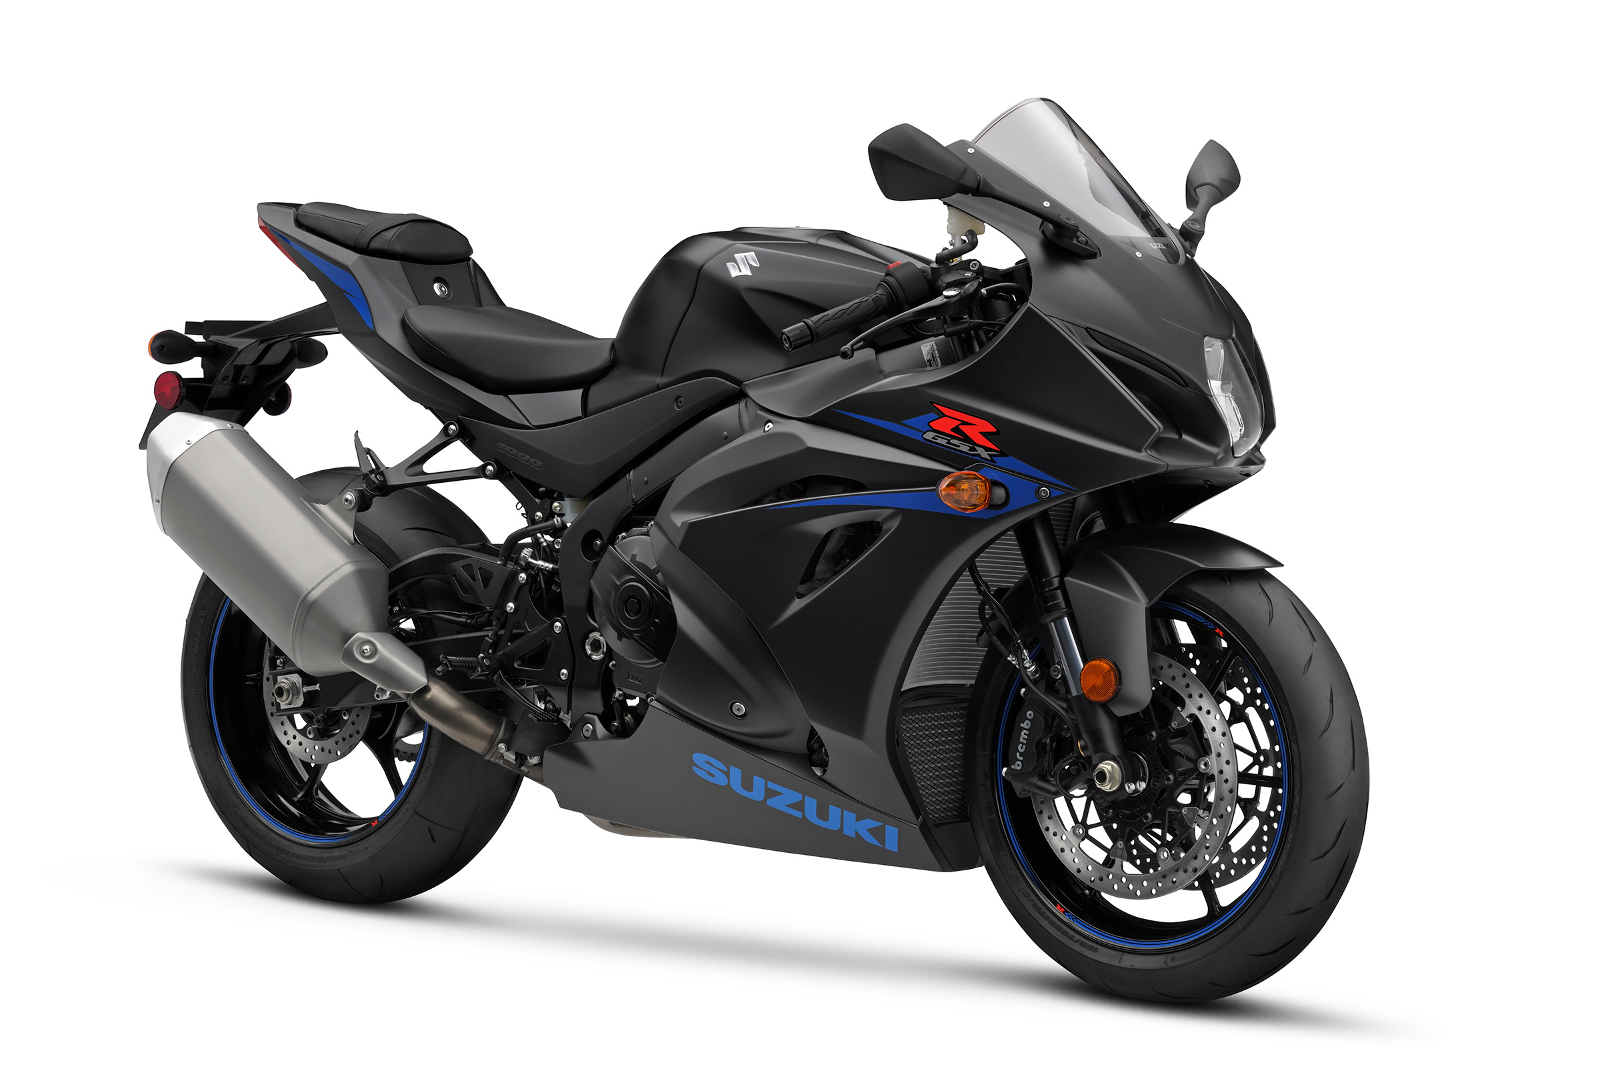 Suzuki recalls GSX-series motorcycles